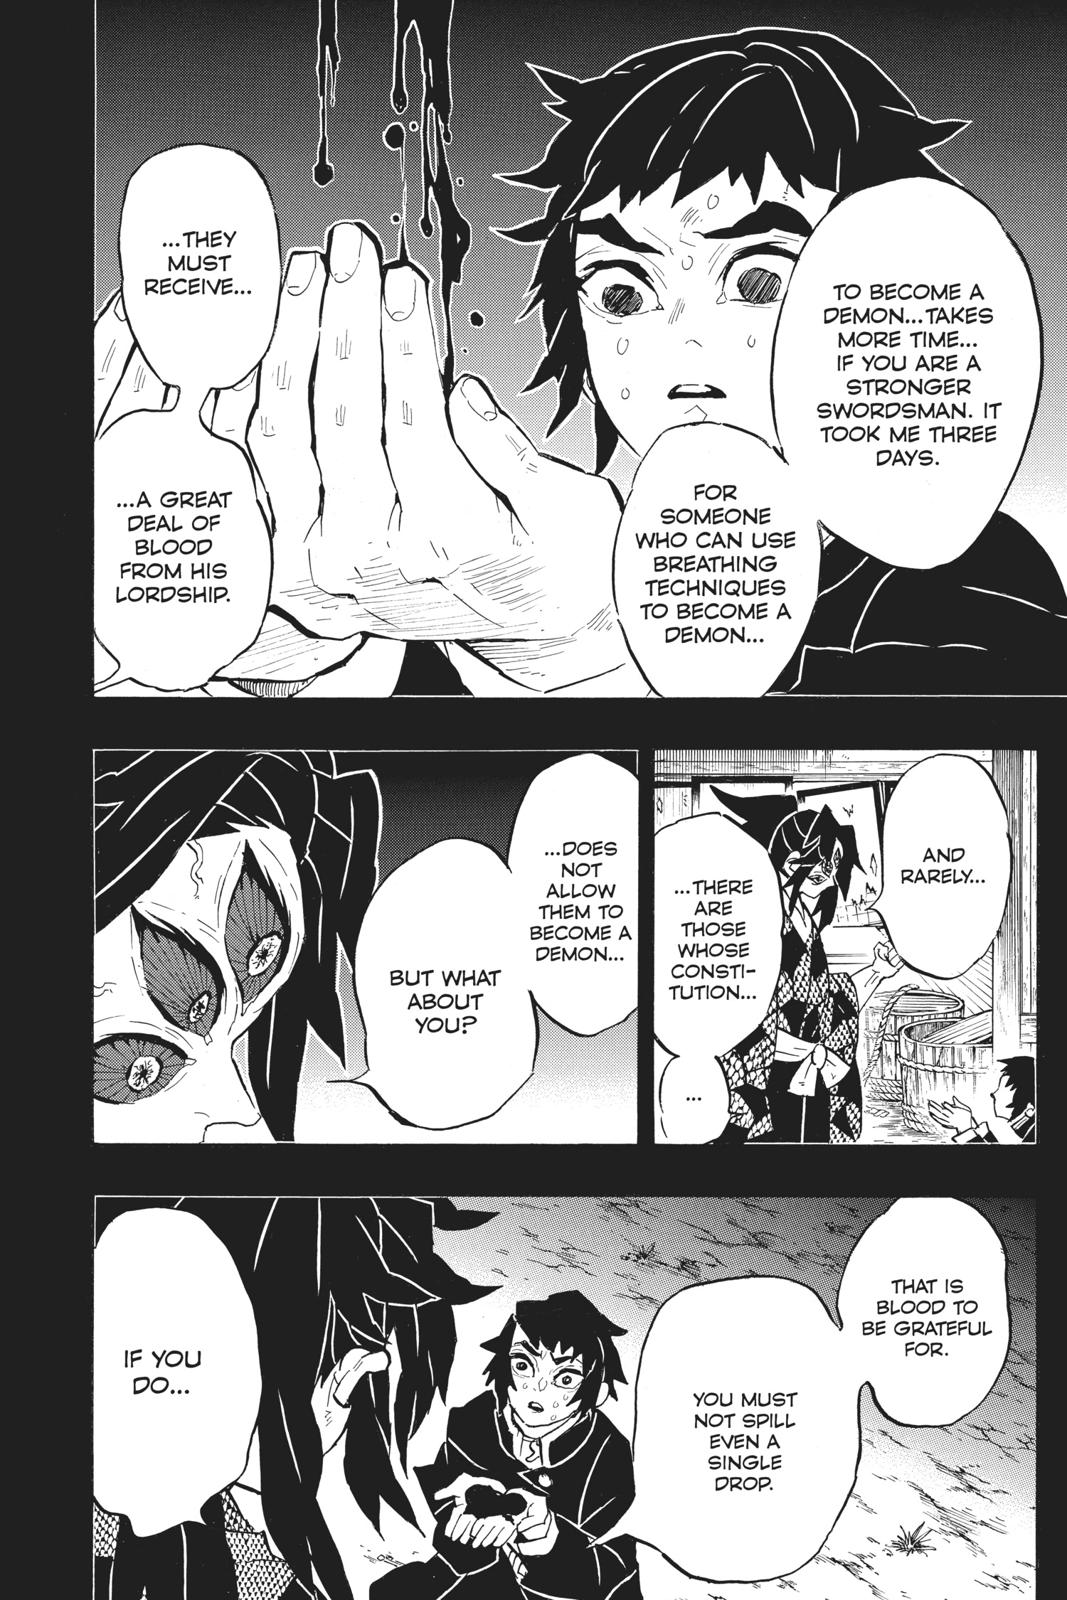 Demon Slayer Manga Manga Chapter - 145 - image 3